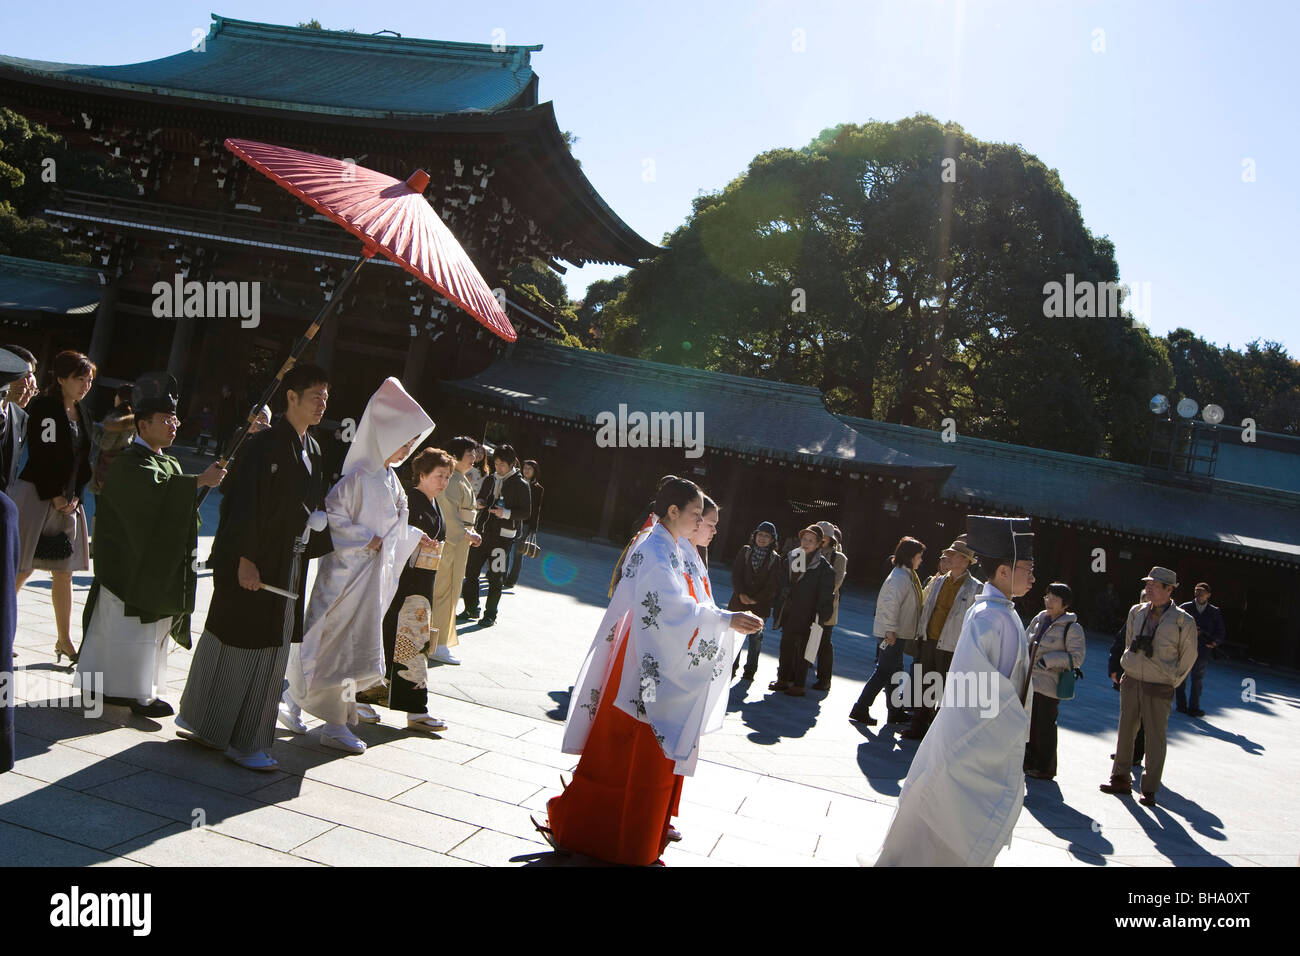 Une religion Shinto traditionnel de la cérémonie du mariage commence au sanctuaire Meiji, Tokyo, Japon, dimanche 7 décembre 2008. Banque D'Images